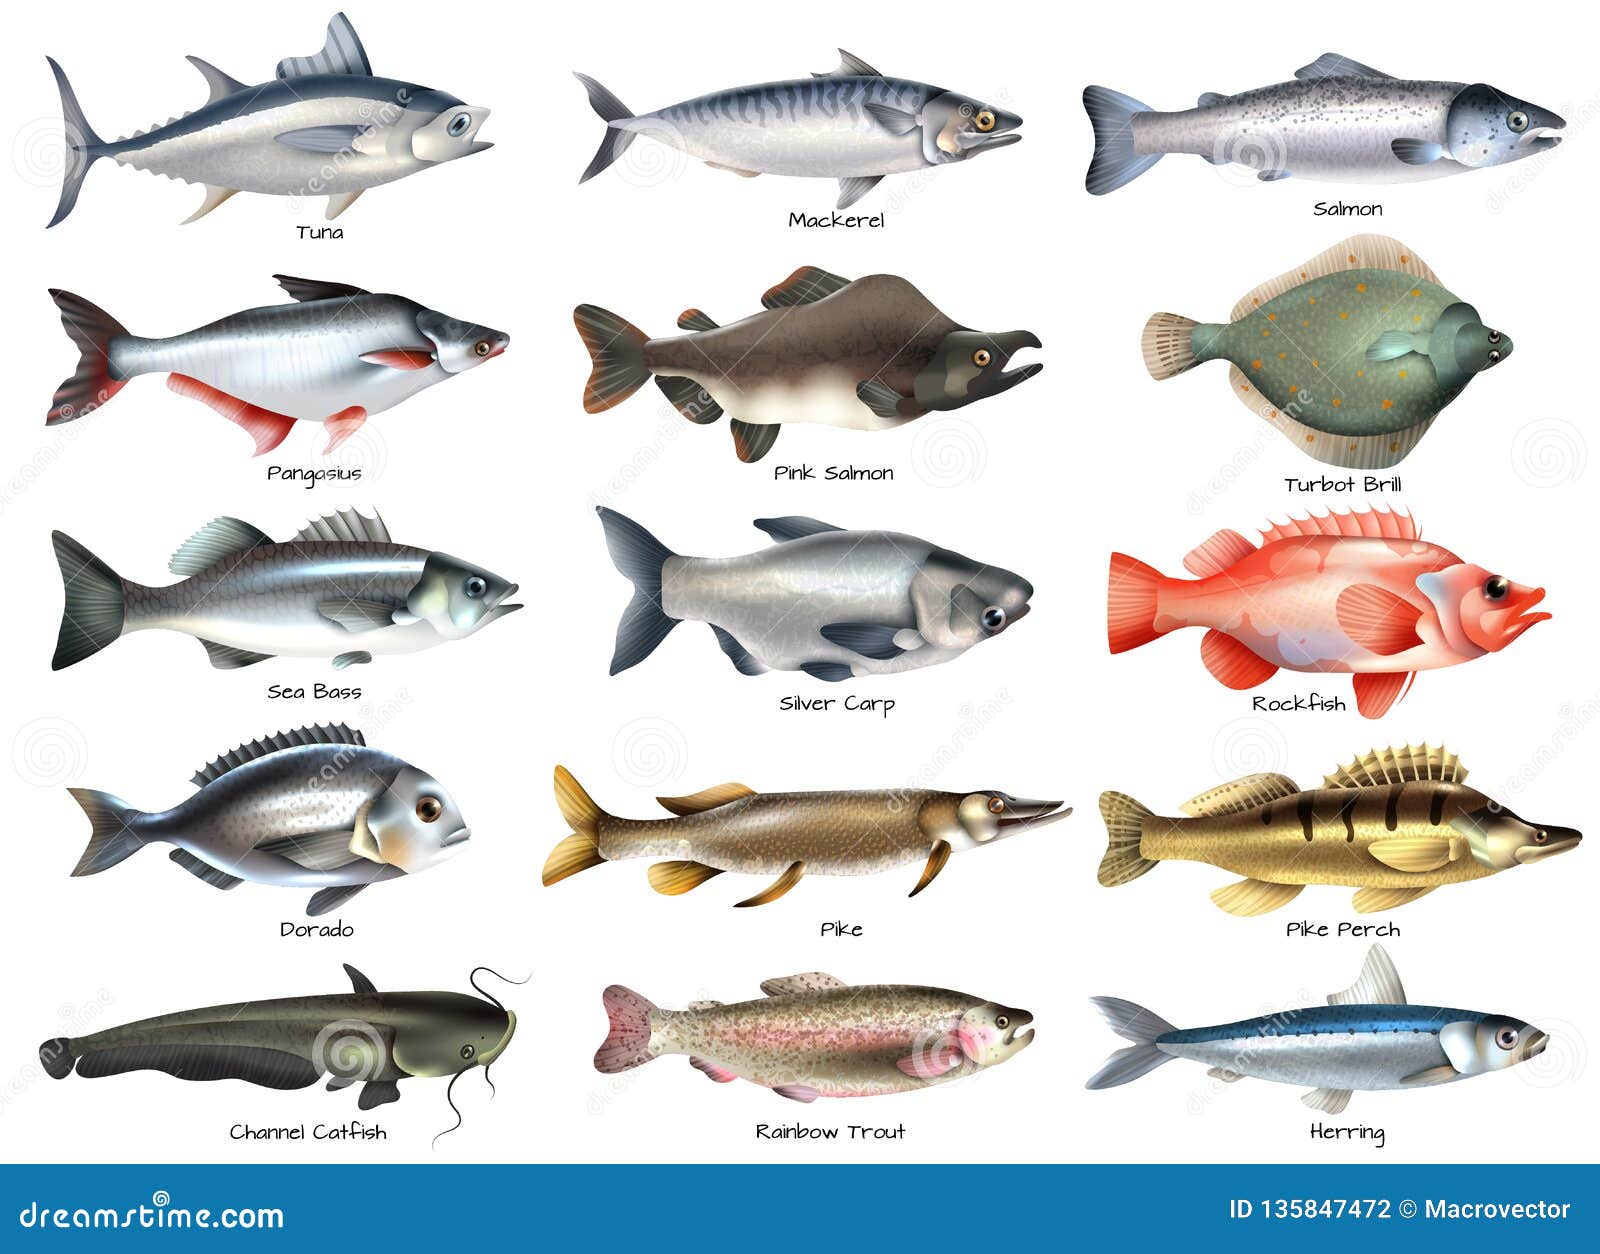 哪种大型淡水鱼被钓的频率最高？垂钓频率较高的几种大型淡水鱼 - 知乎